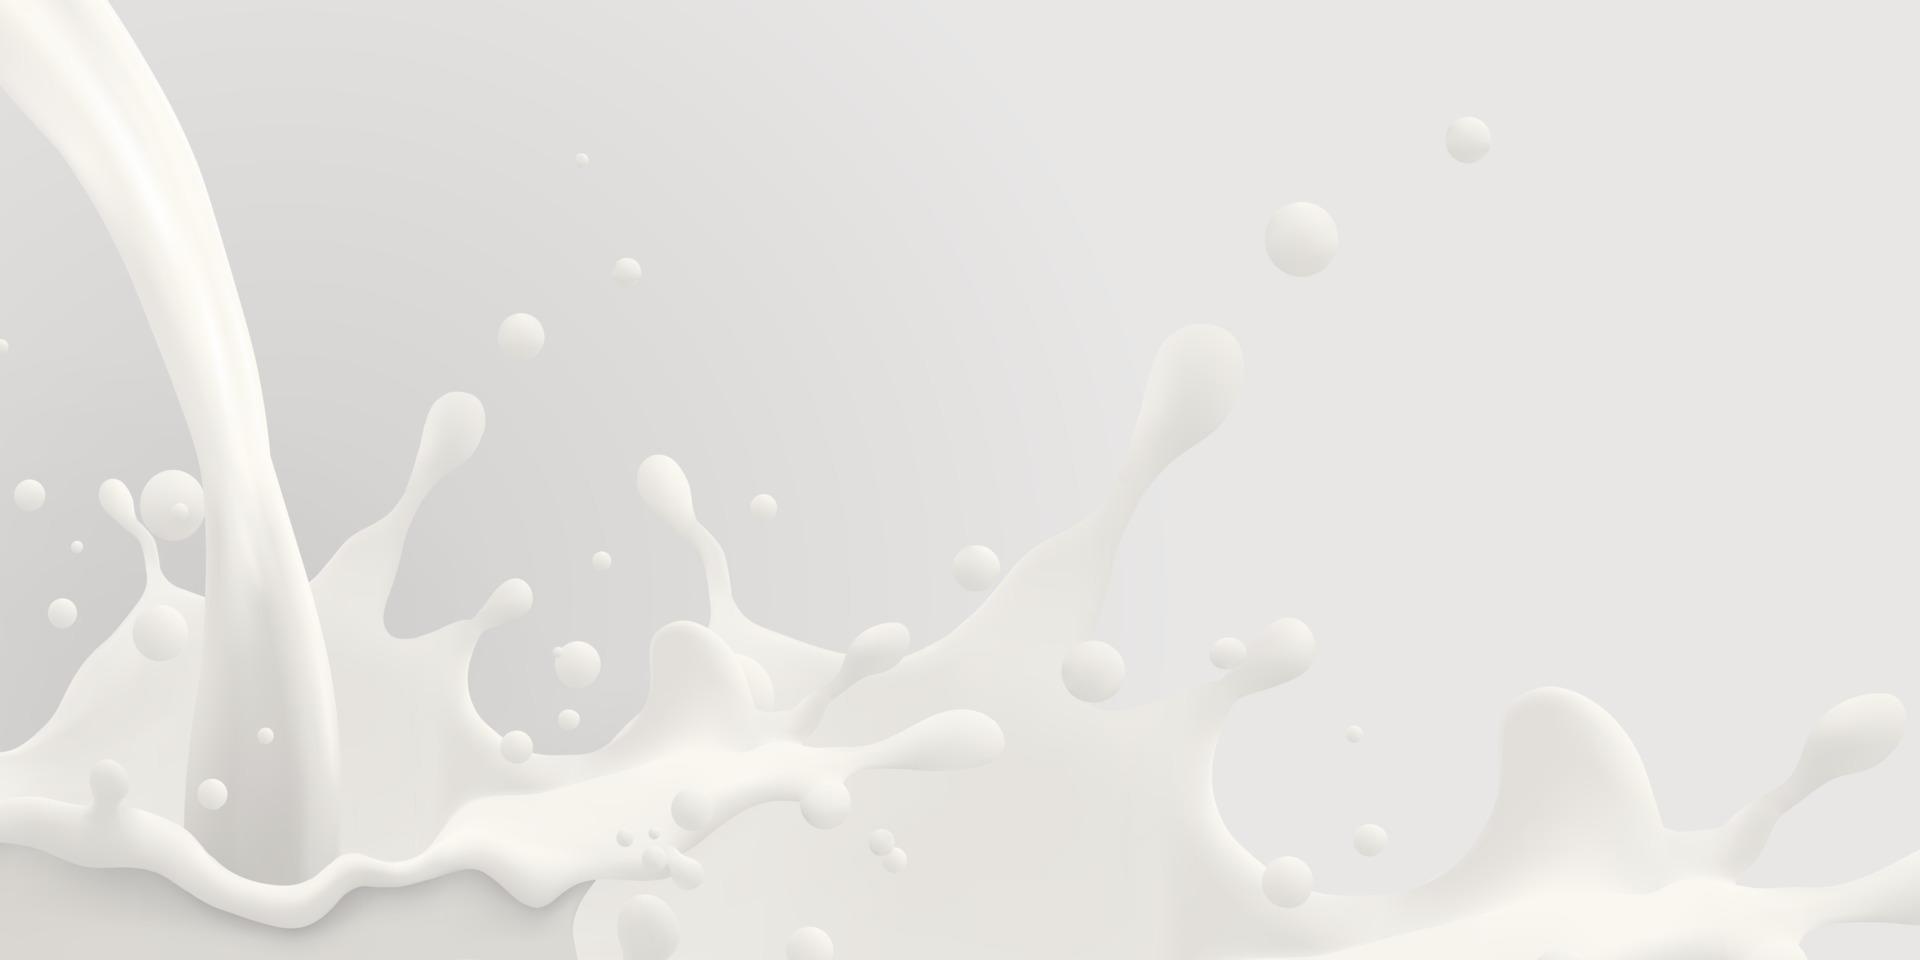 fundo de jato de leite, respingo leitoso, respingo branco líquido realista de vetor em fundo isolado. ilustração 3D.